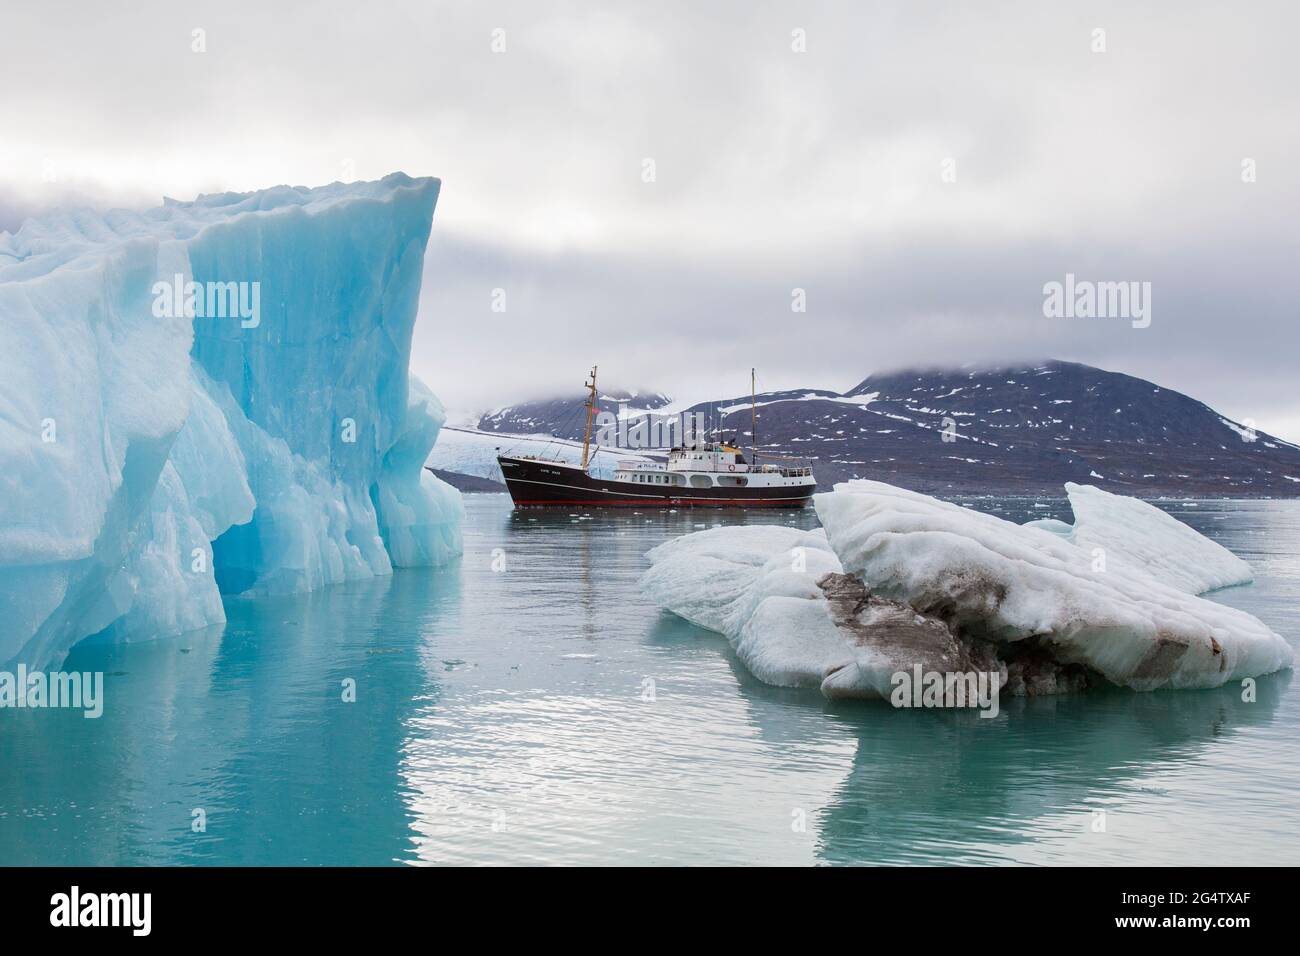 Buque expedición ártica MS Cape Race visitando Monacobaren, glaciar en Haakon VII Land, Liefdefjorden, Spitsbergen / Svalbard, Noruega Foto de stock